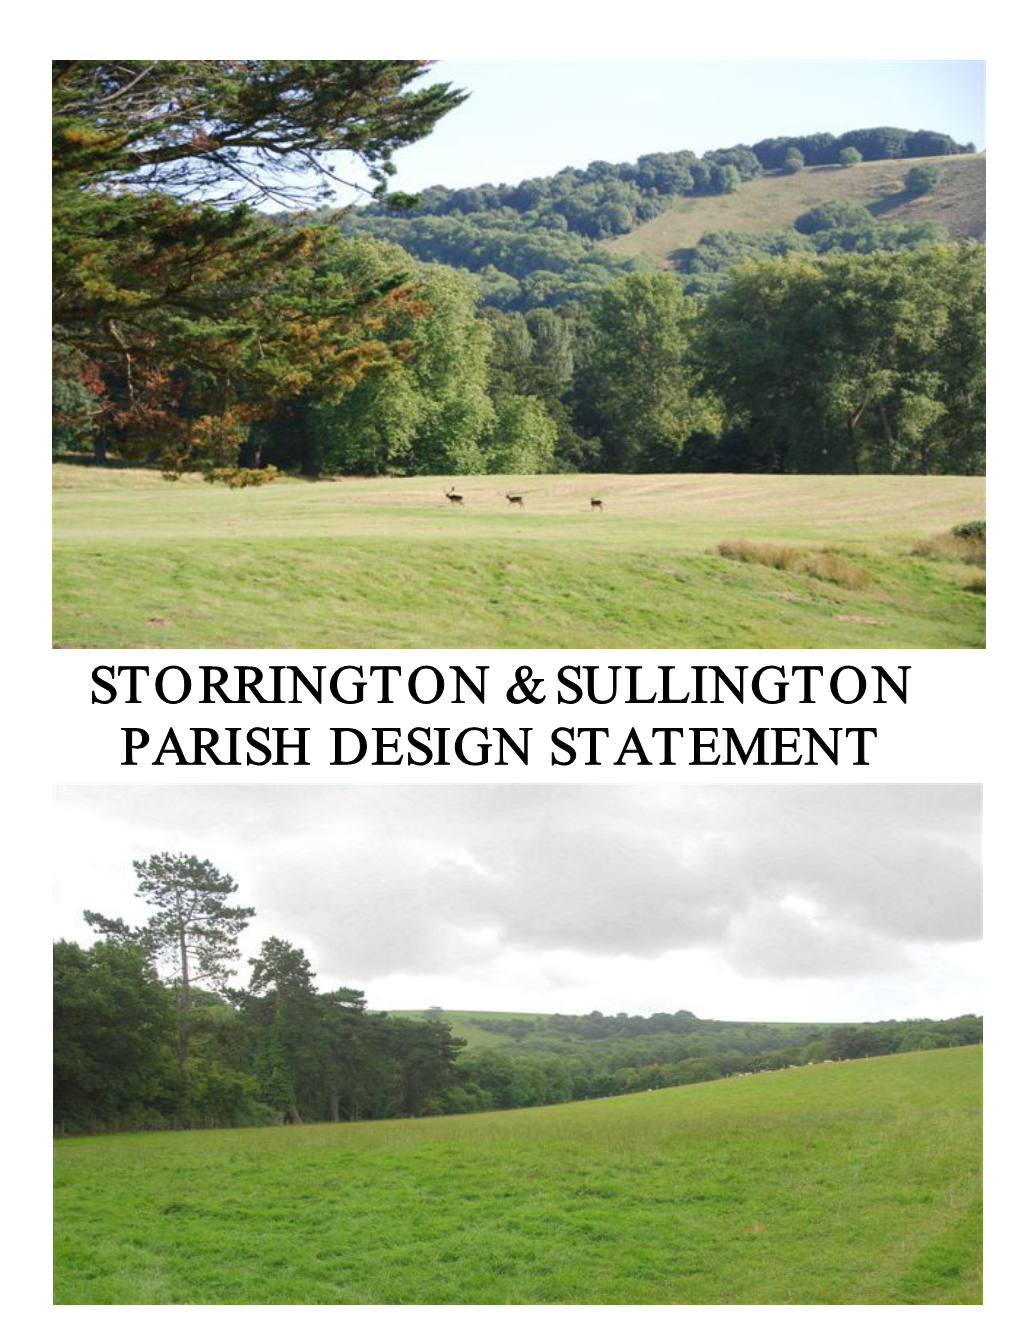 Storrington & Sullington Parish Design Statement